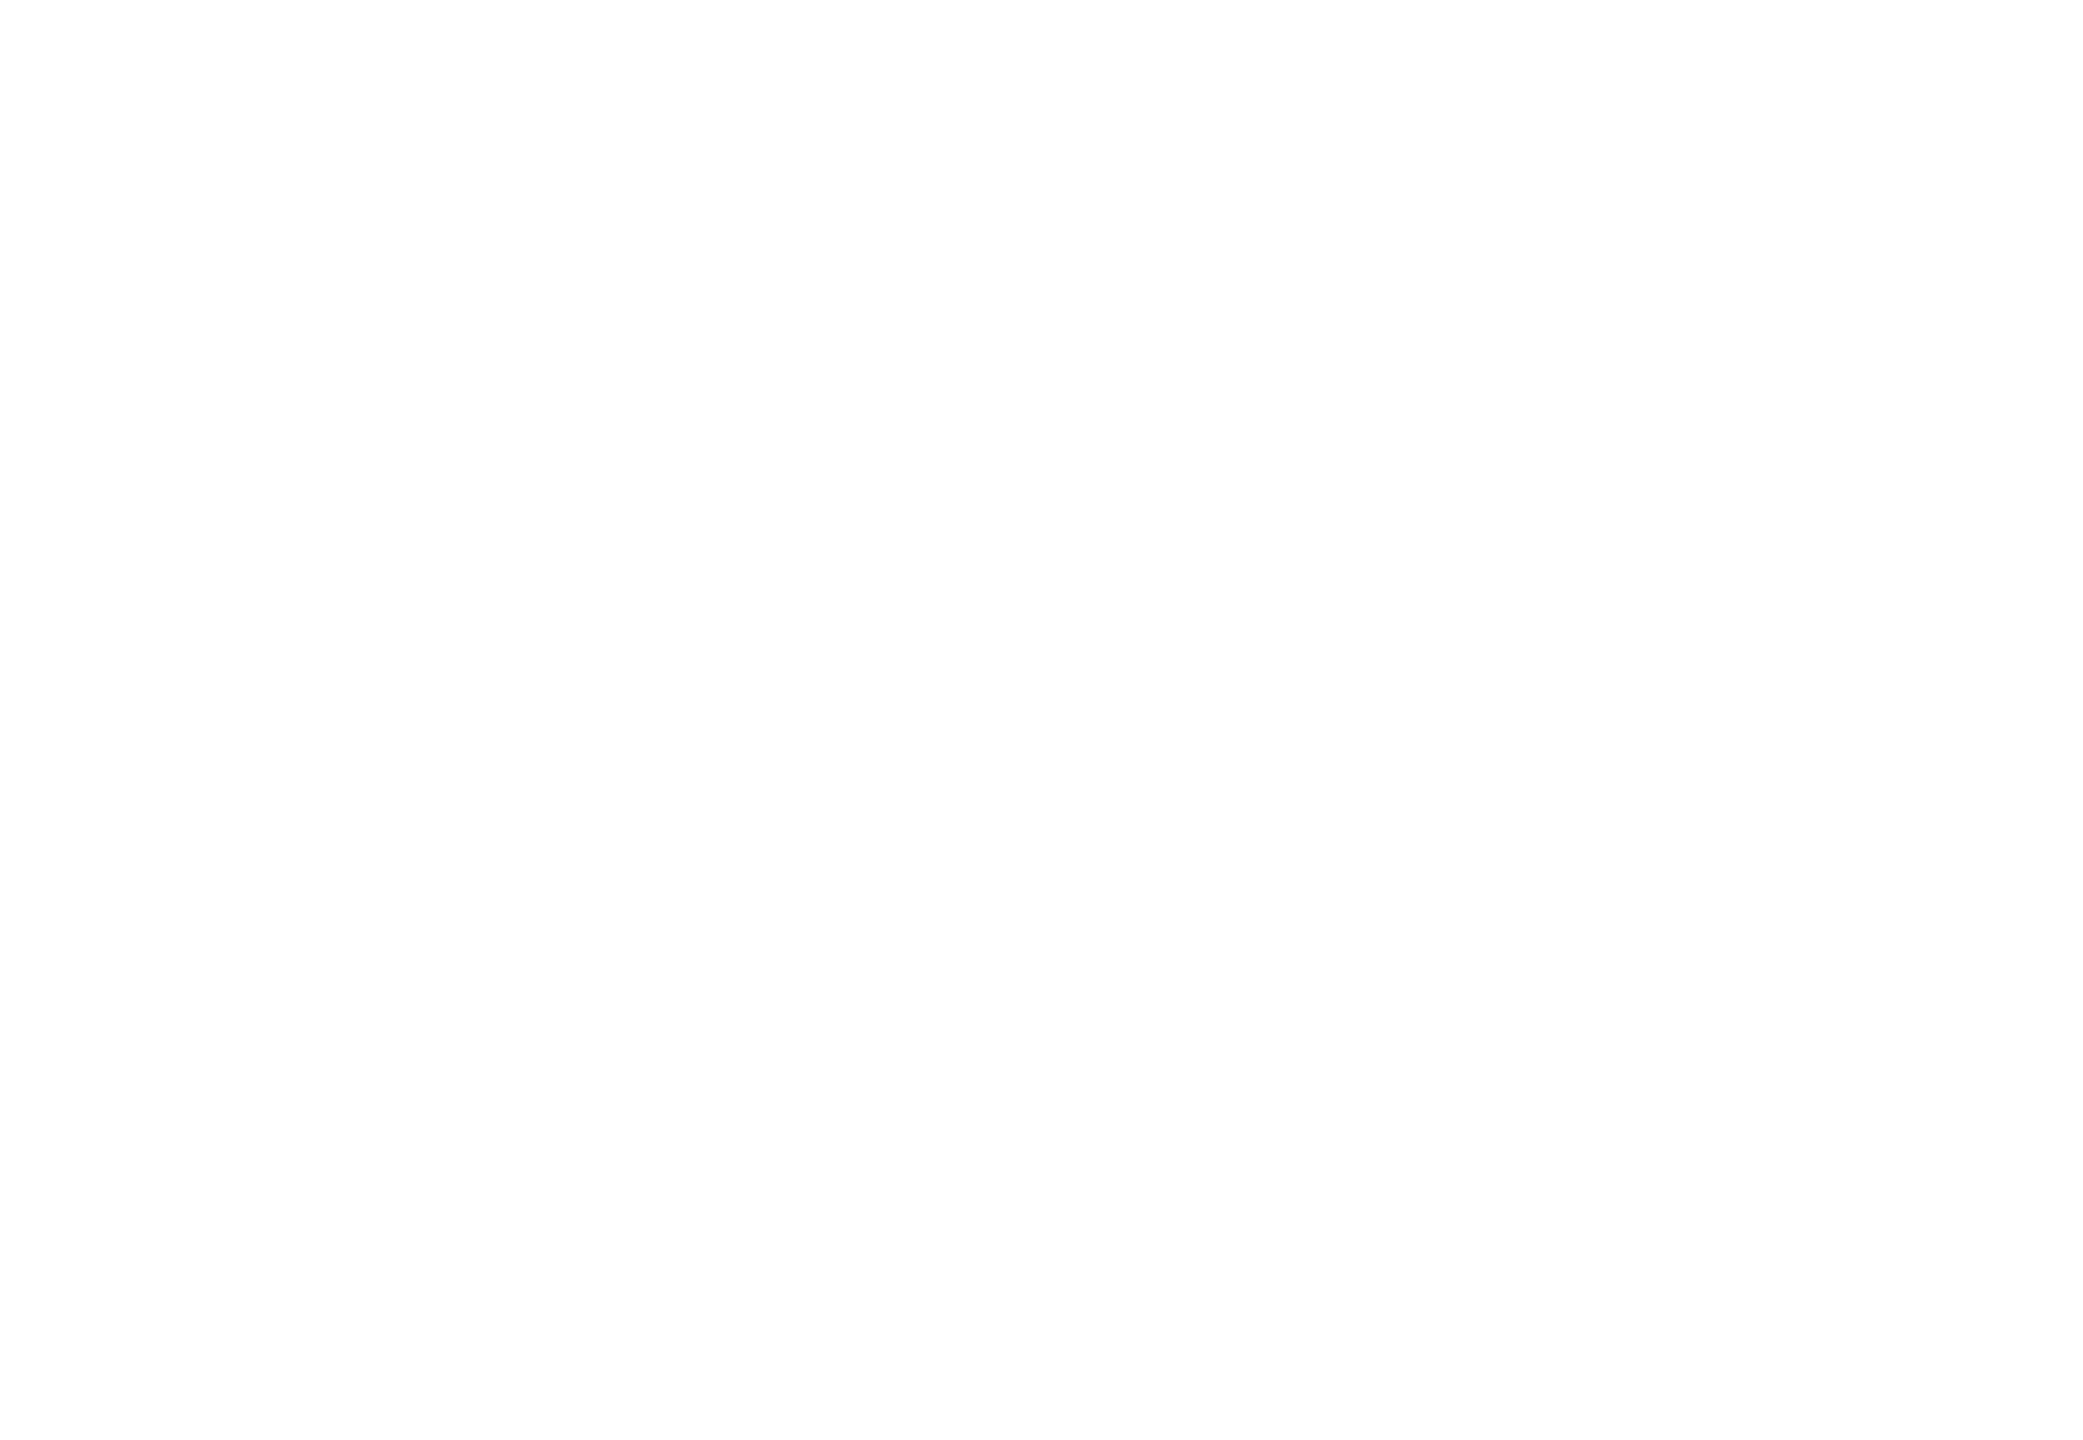 GrabCAD Print